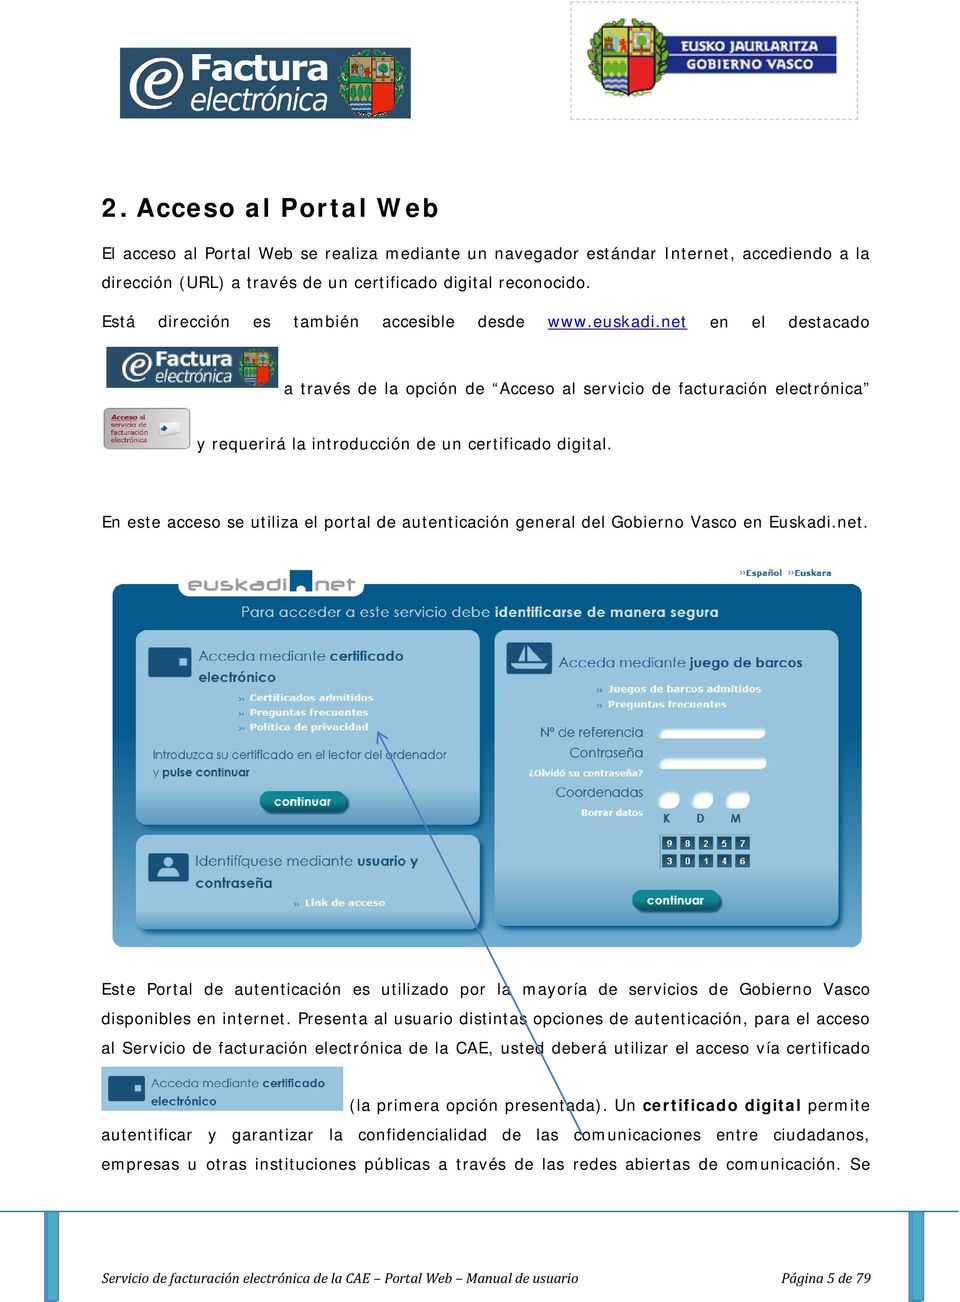 En este acceso se utiliza el portal de autenticación general del Gobierno Vasco en Euskadi.net.